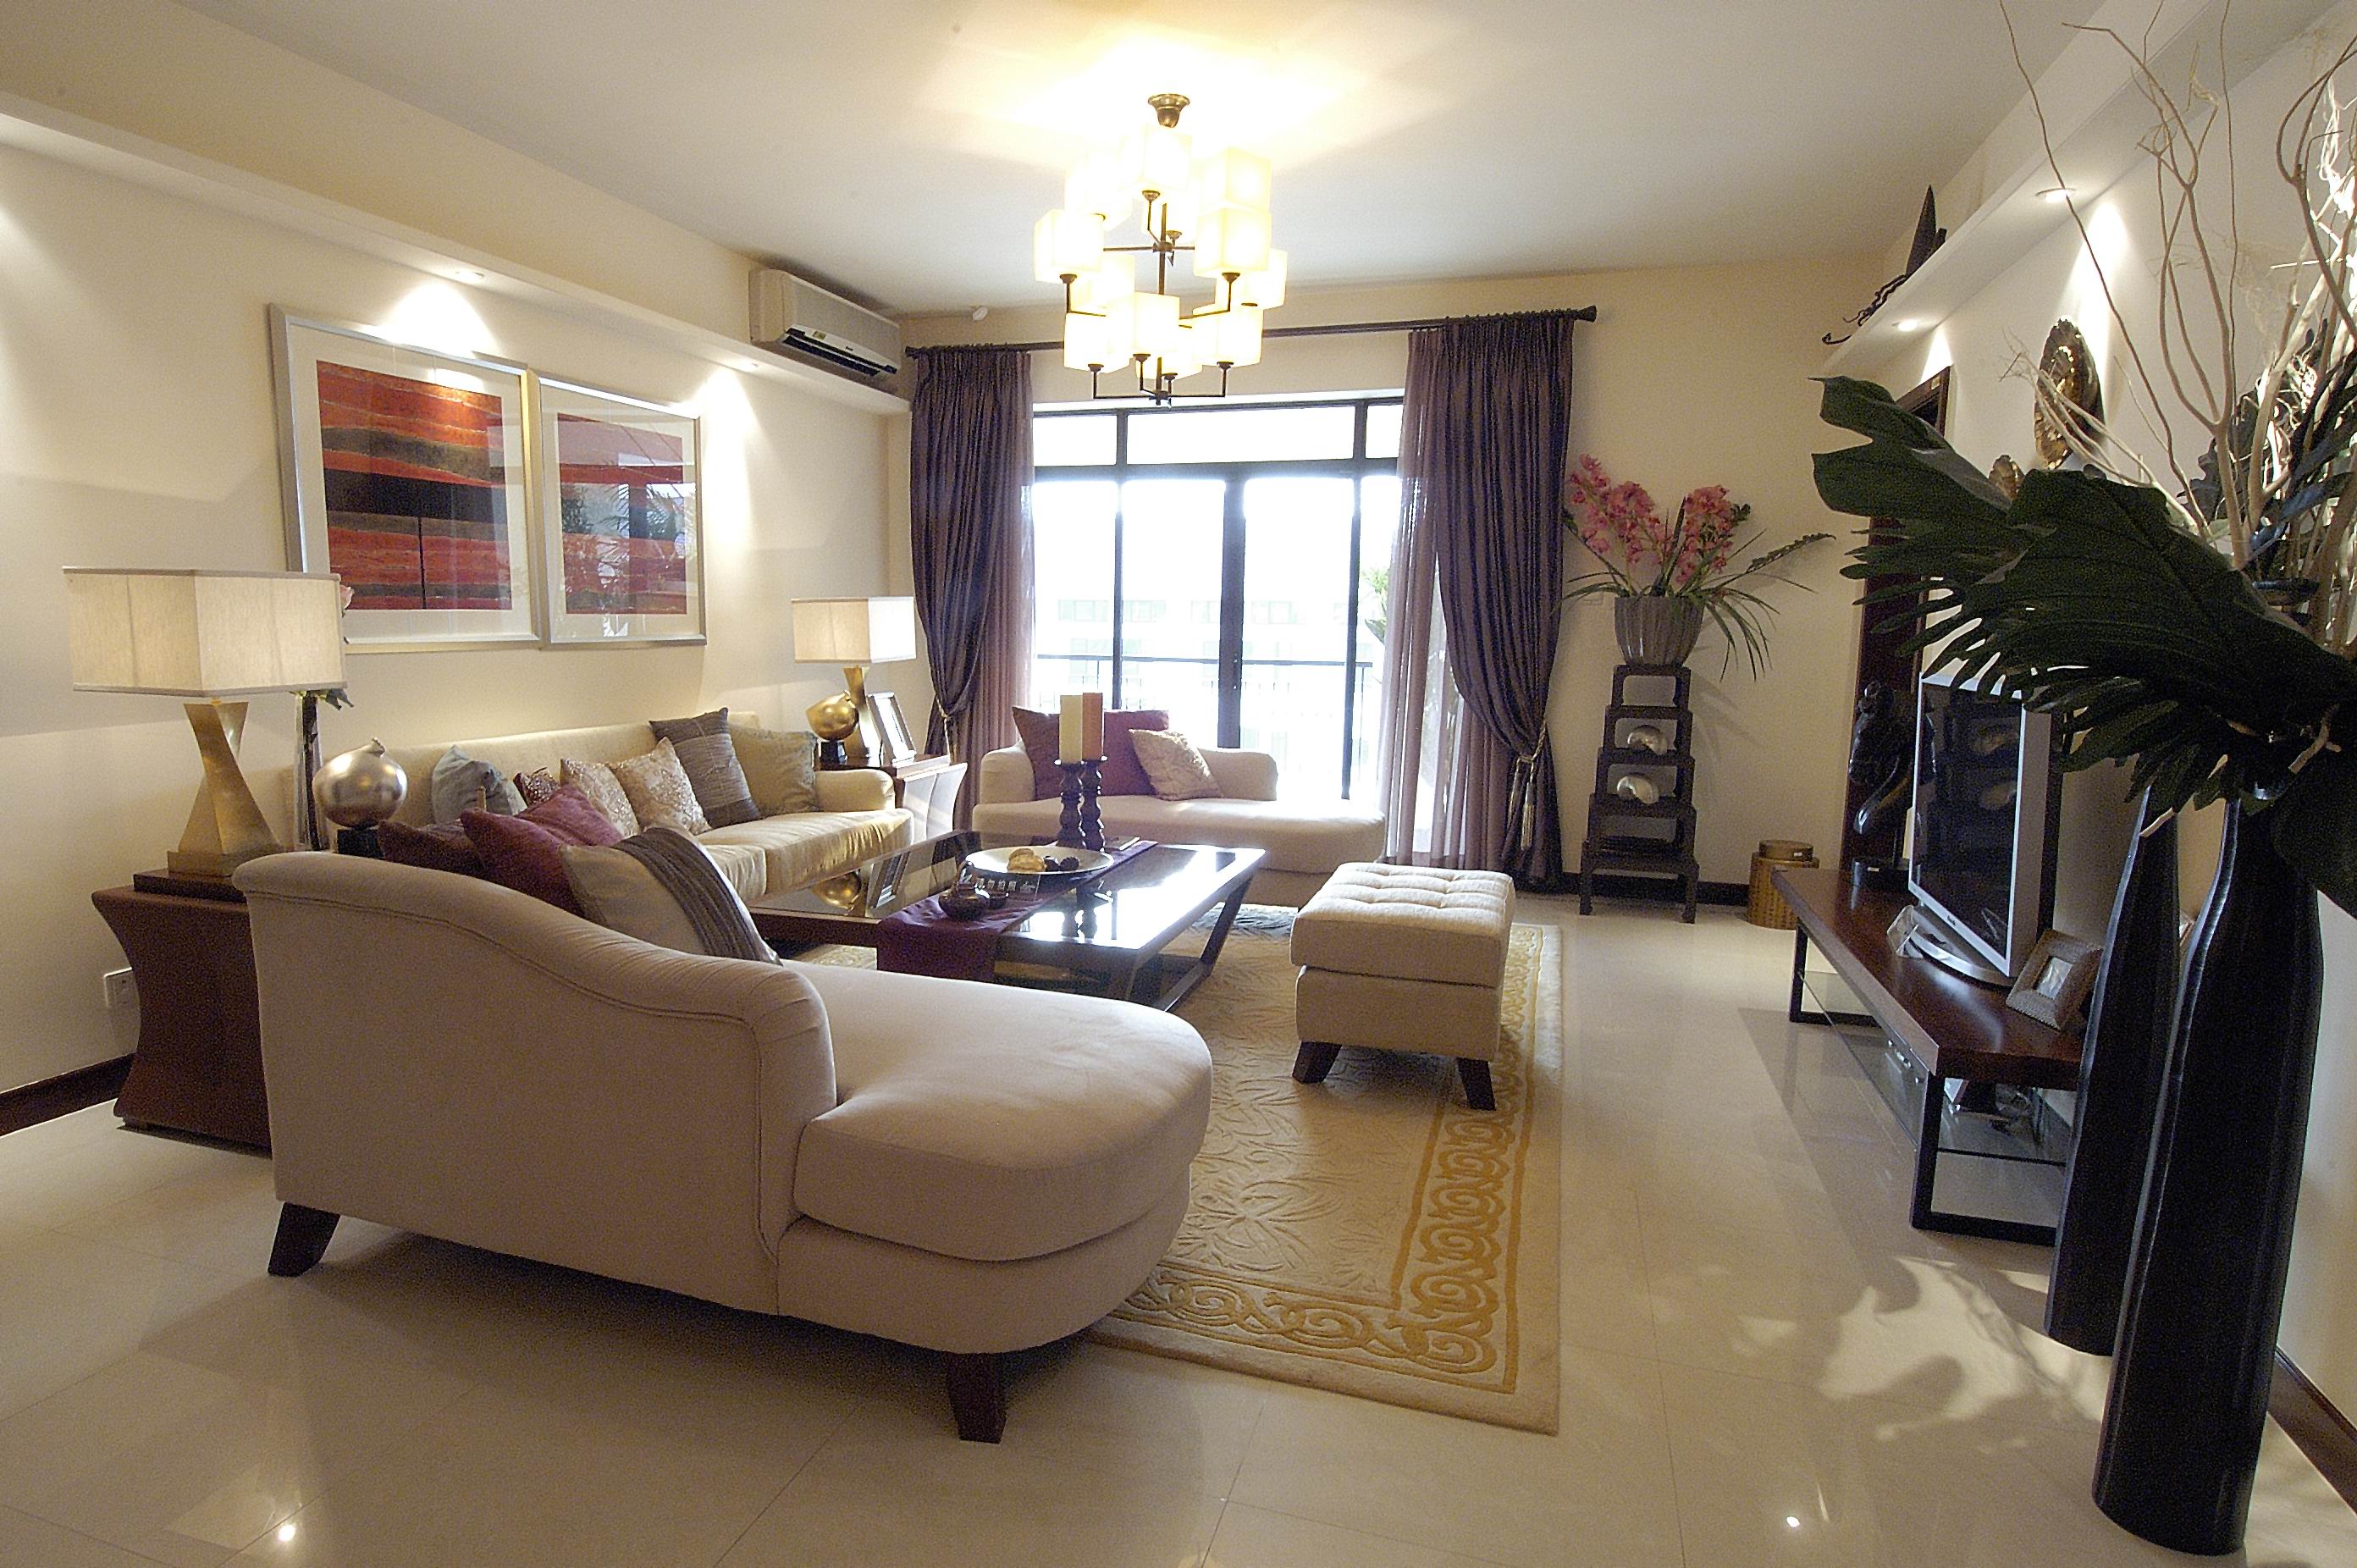 公寓 中式 客厅图片来自紫禁尚品国际装饰小孔在中式风格泛海国际案例的分享